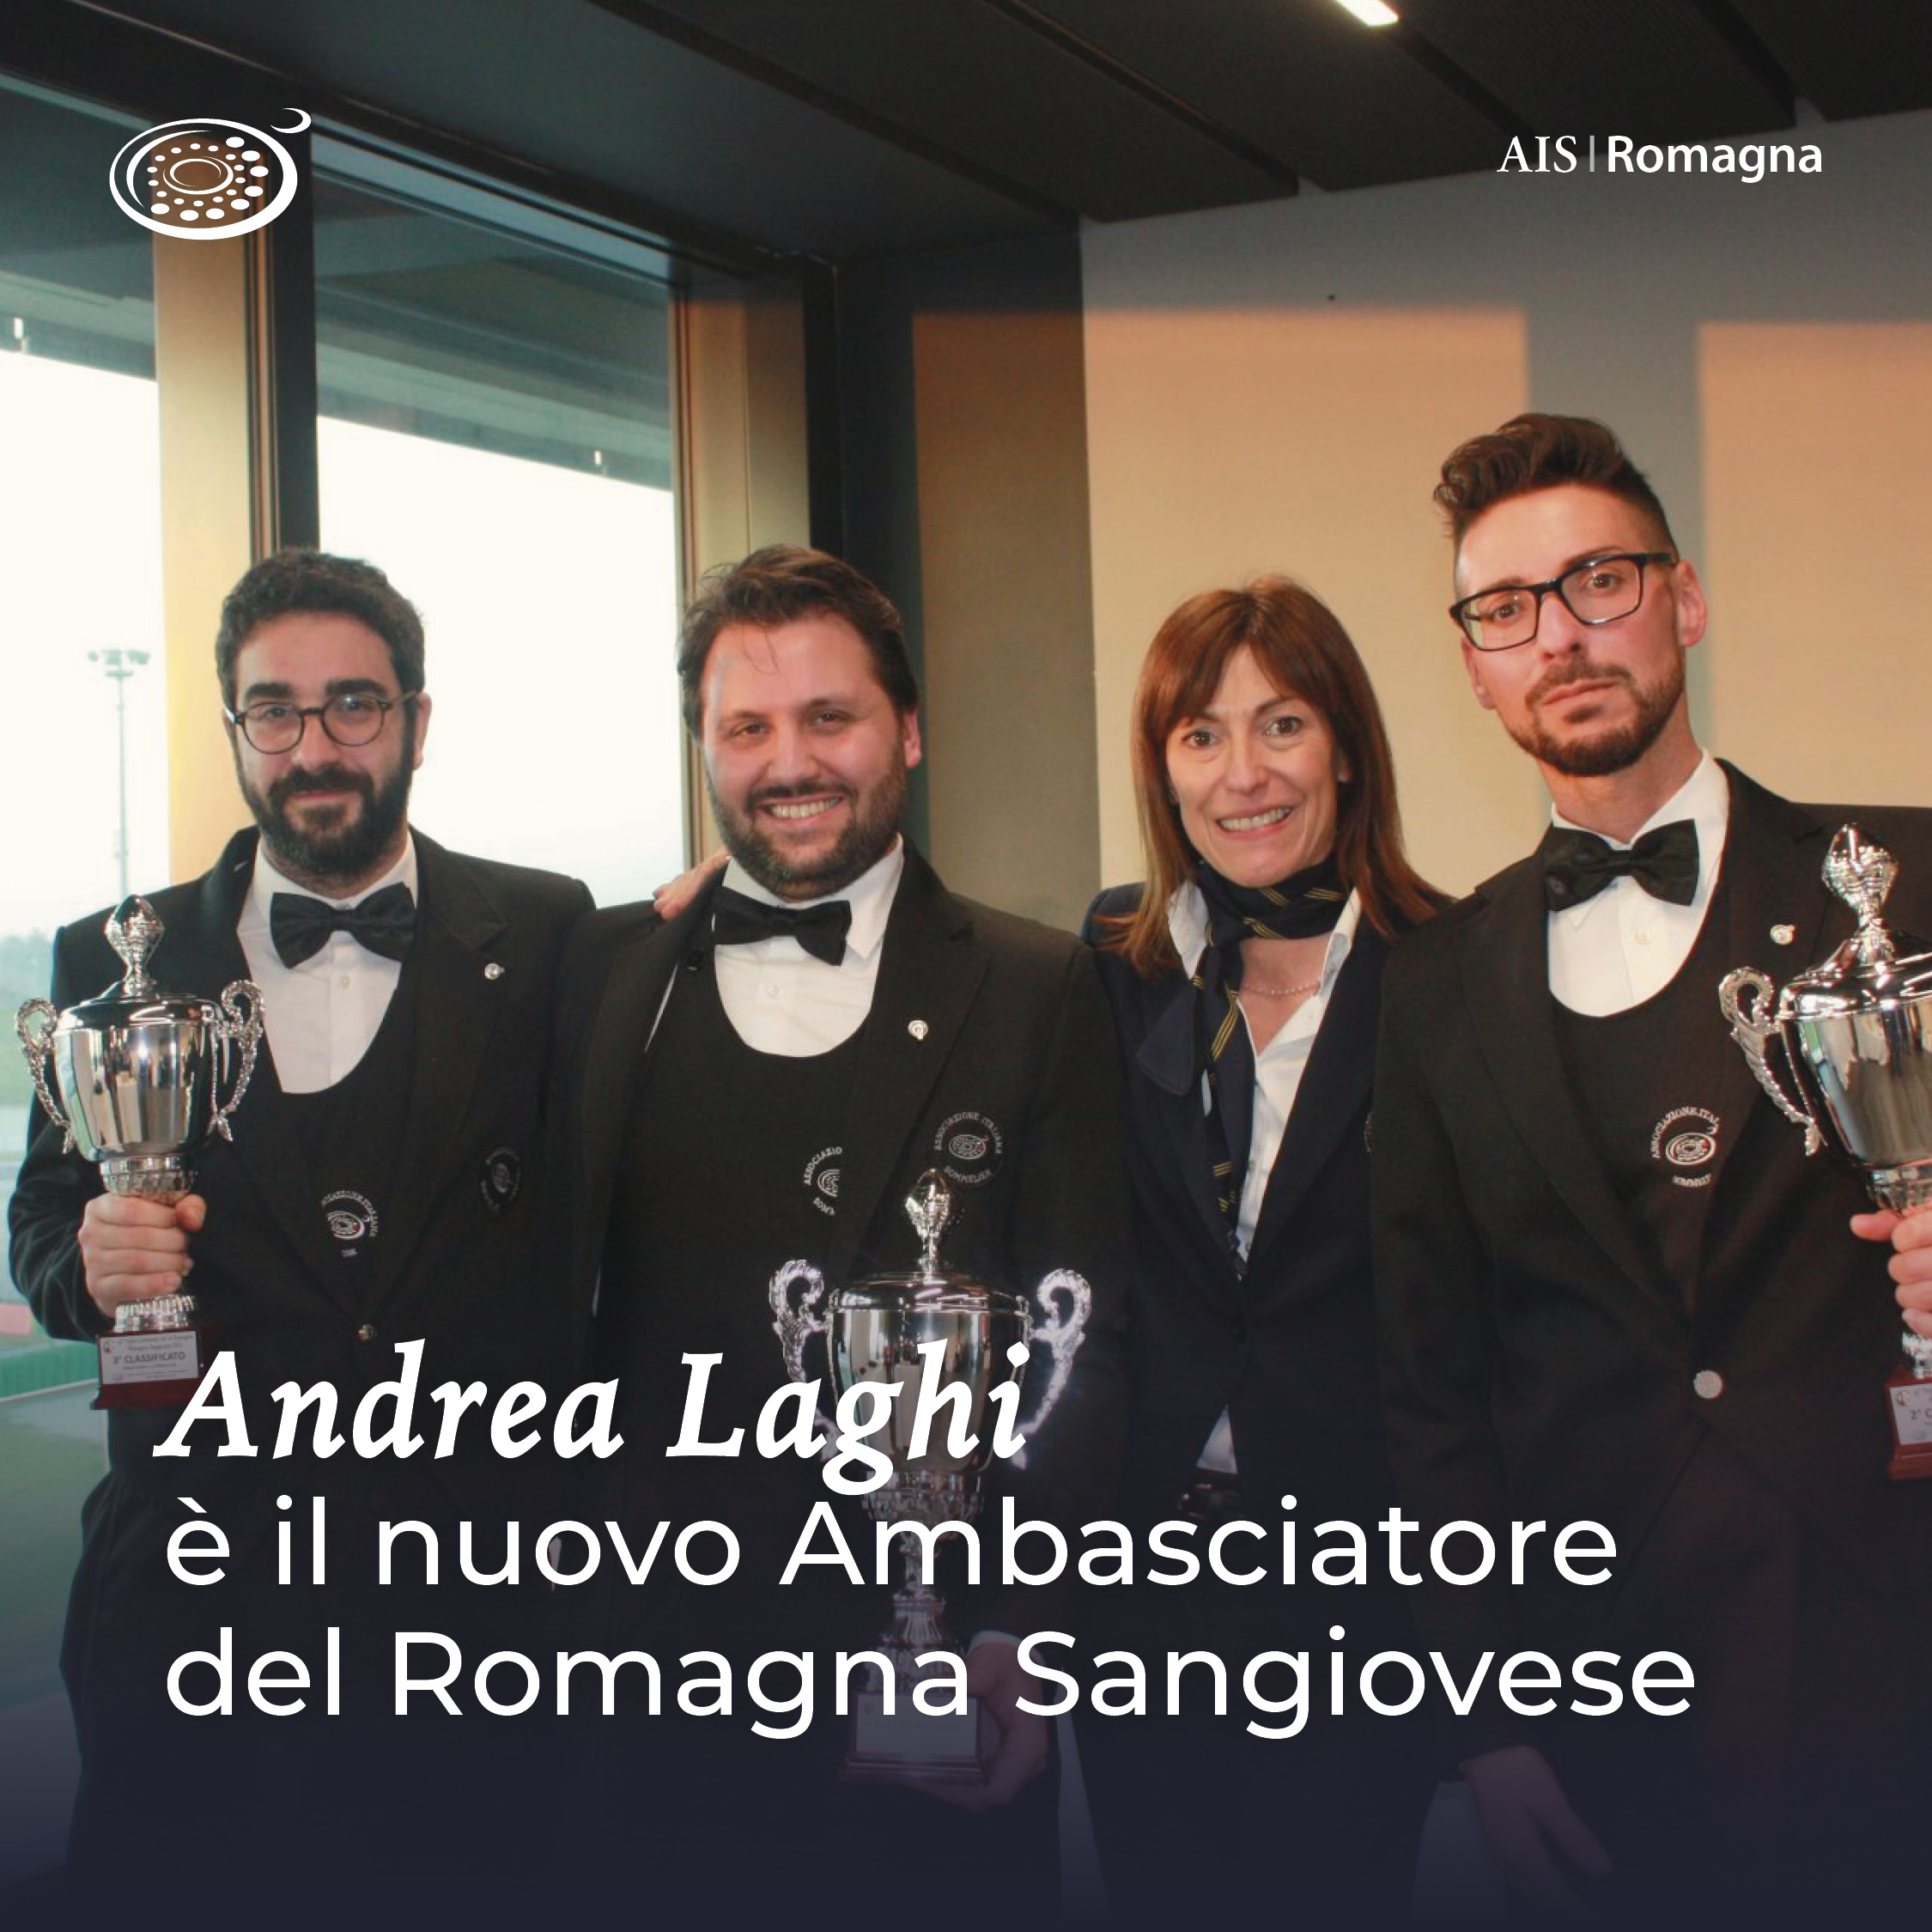 Andrea Laghi è il nuovo Ambasciatore del Romagna Sangiovese